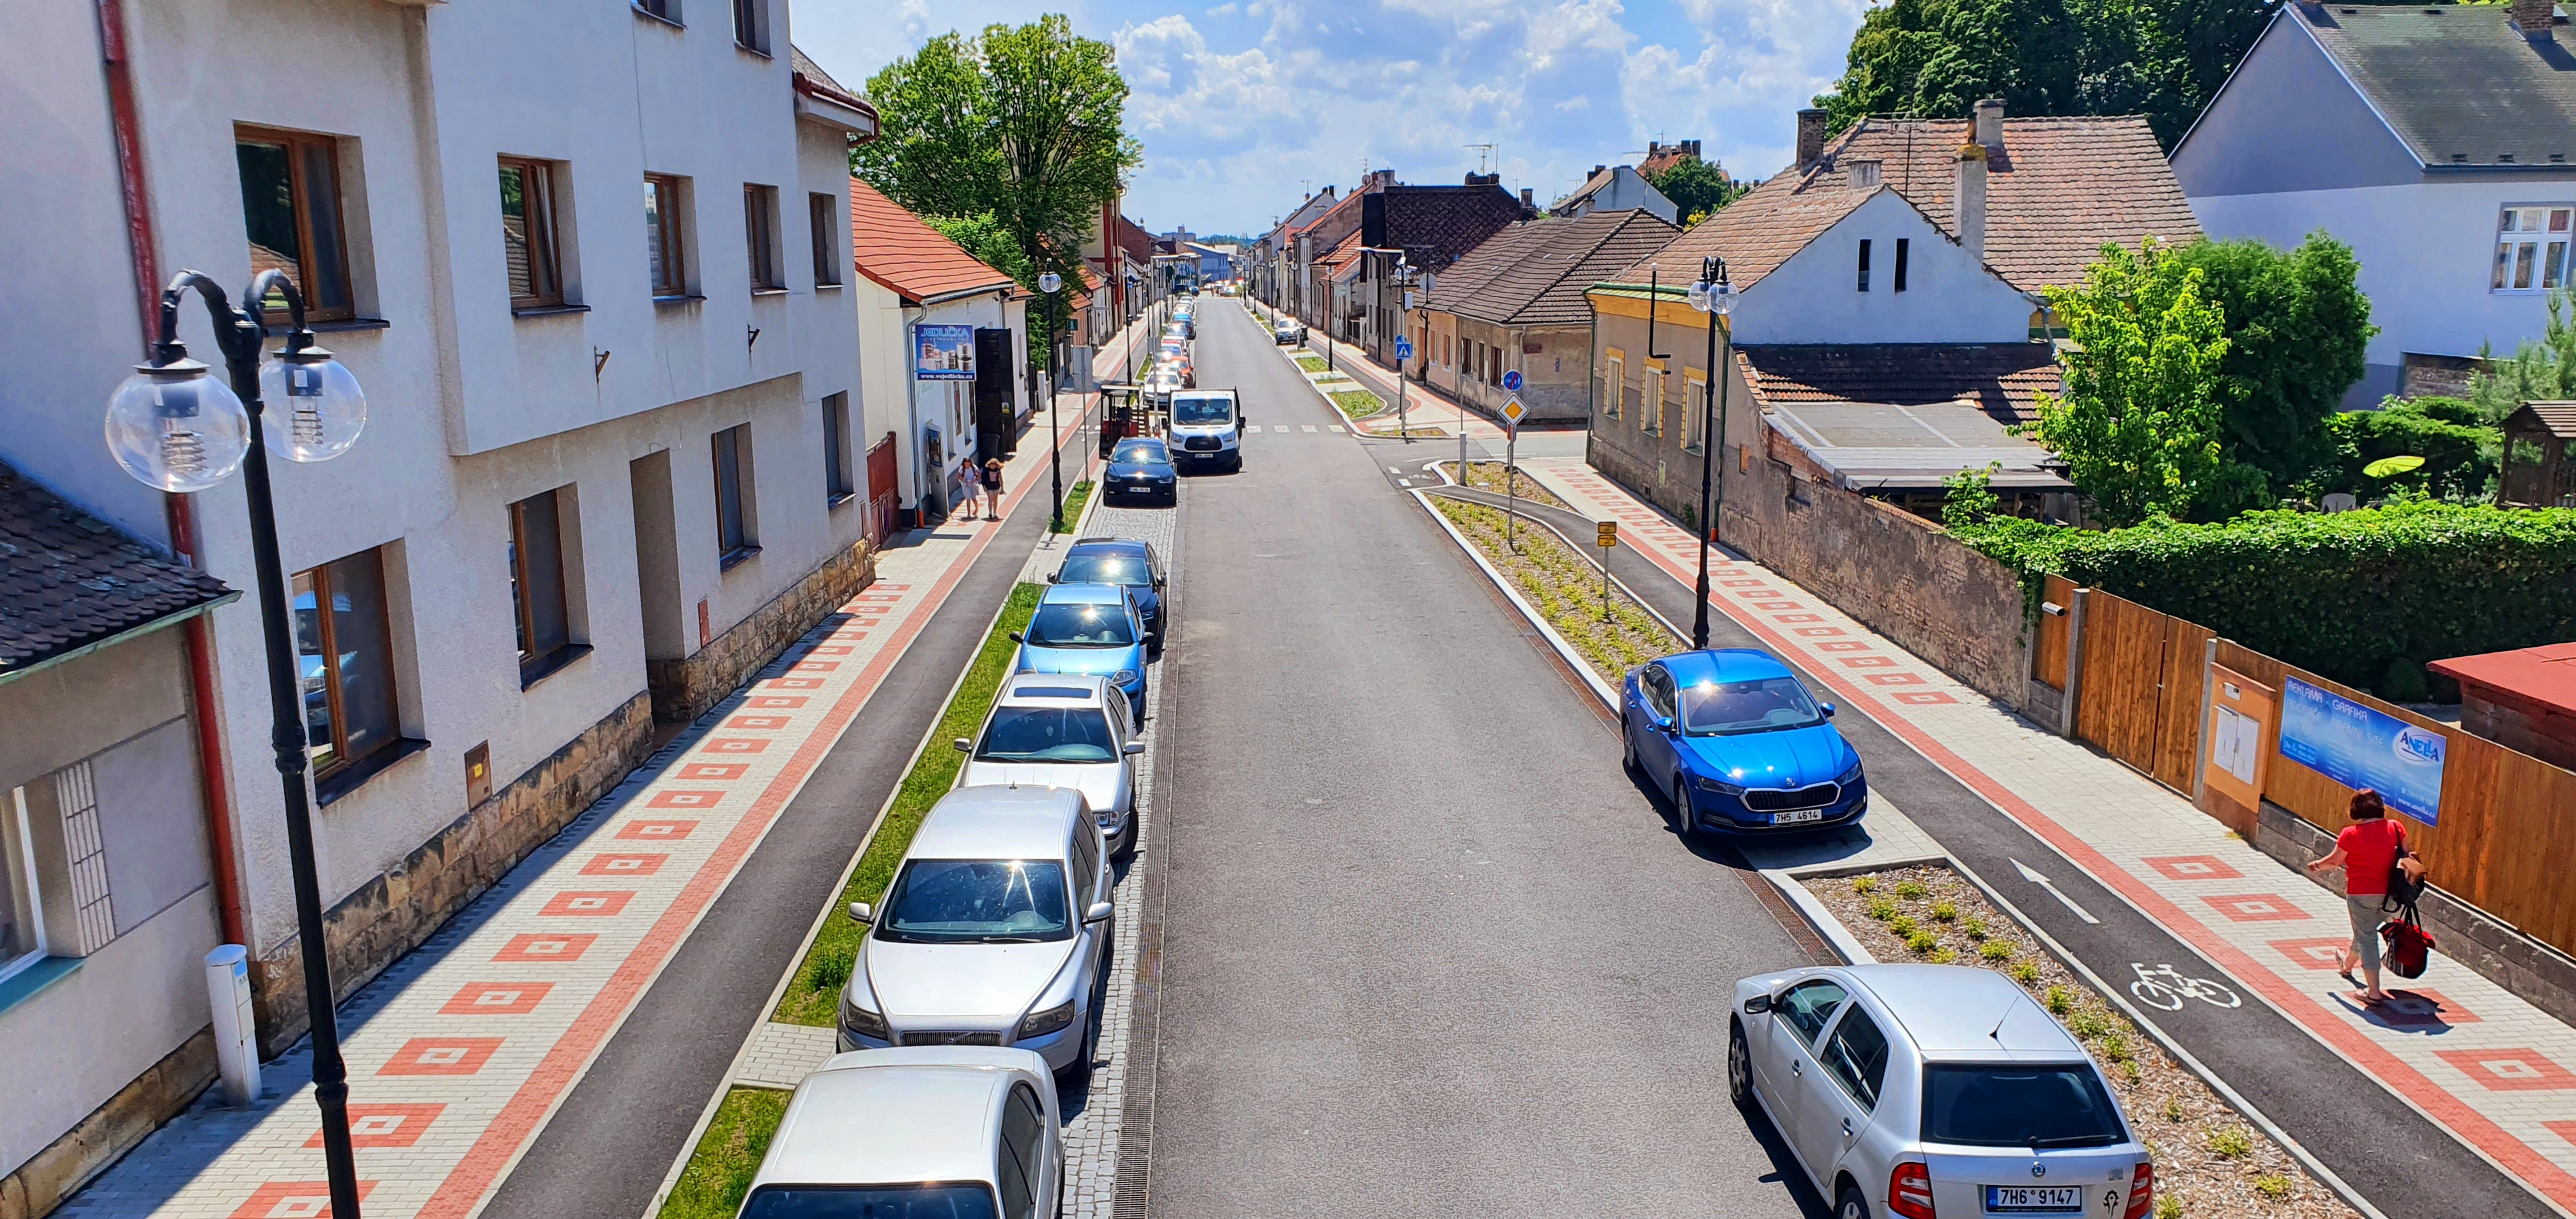 Obrázek 1 - Rekonstrukce ulic F. Palackého a Husova třída v Novém Bydžově